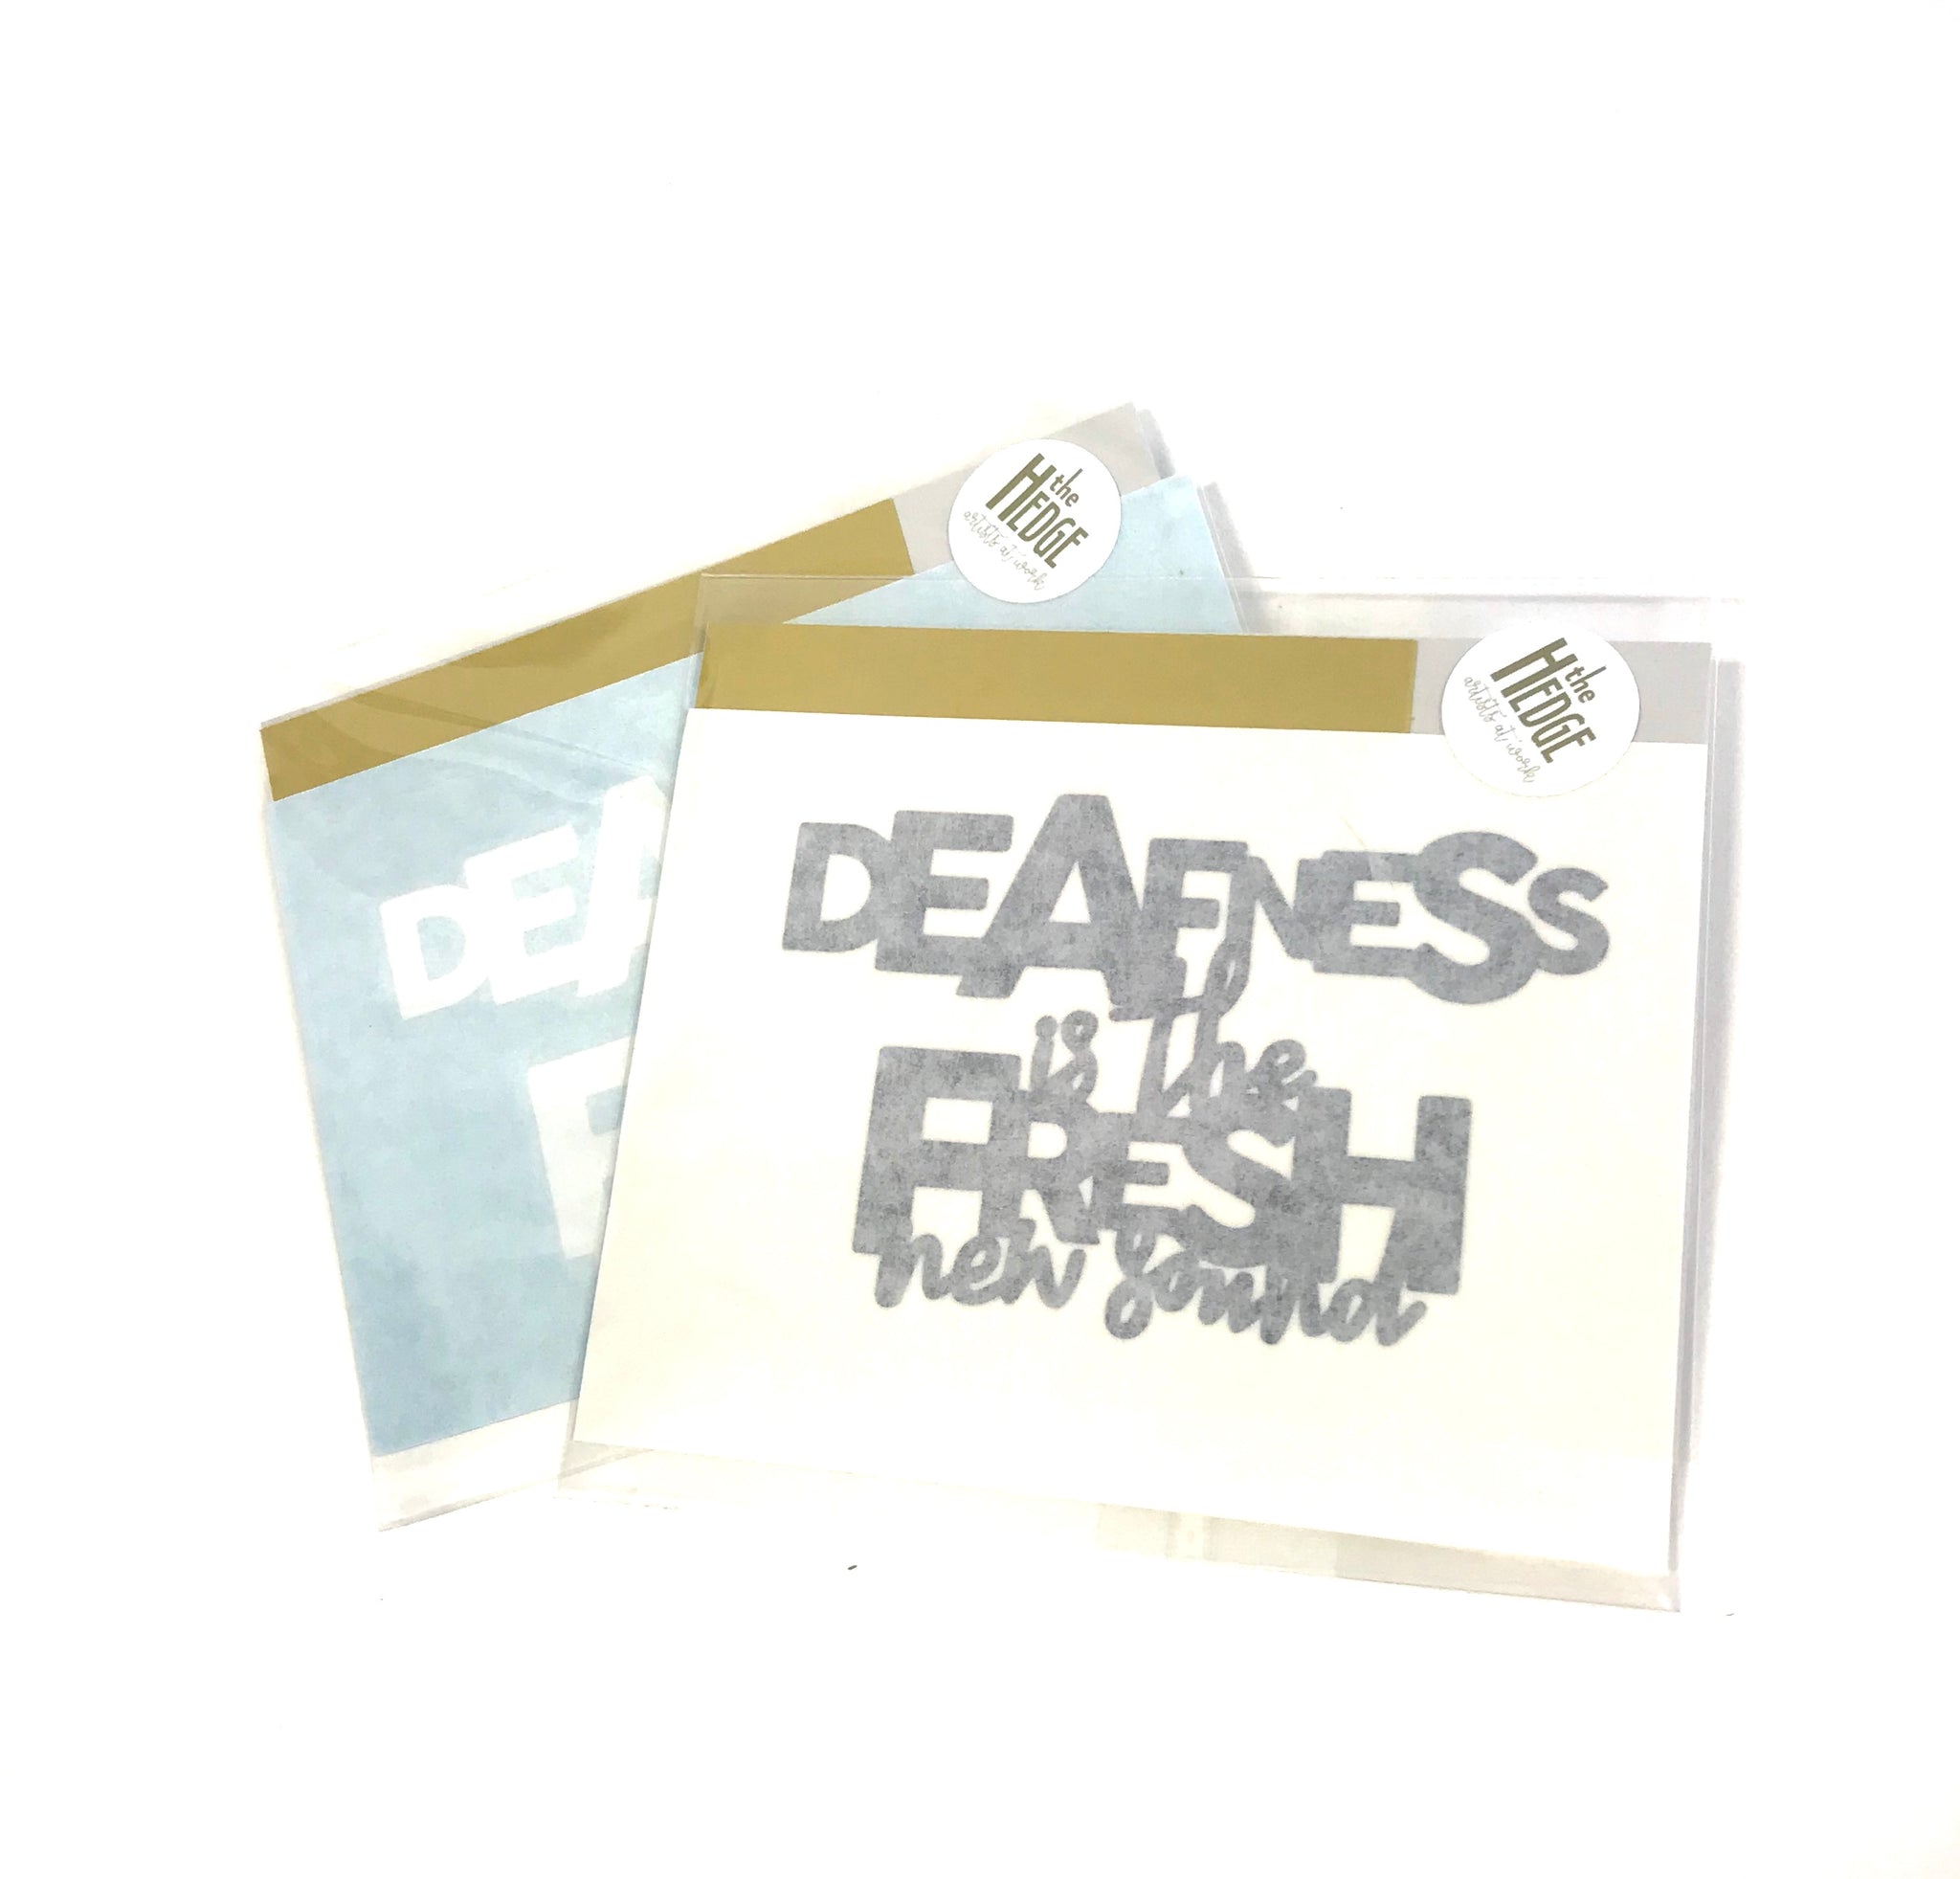 Activist Wear - Deafness is the Fresh new sound Sticker/Decal